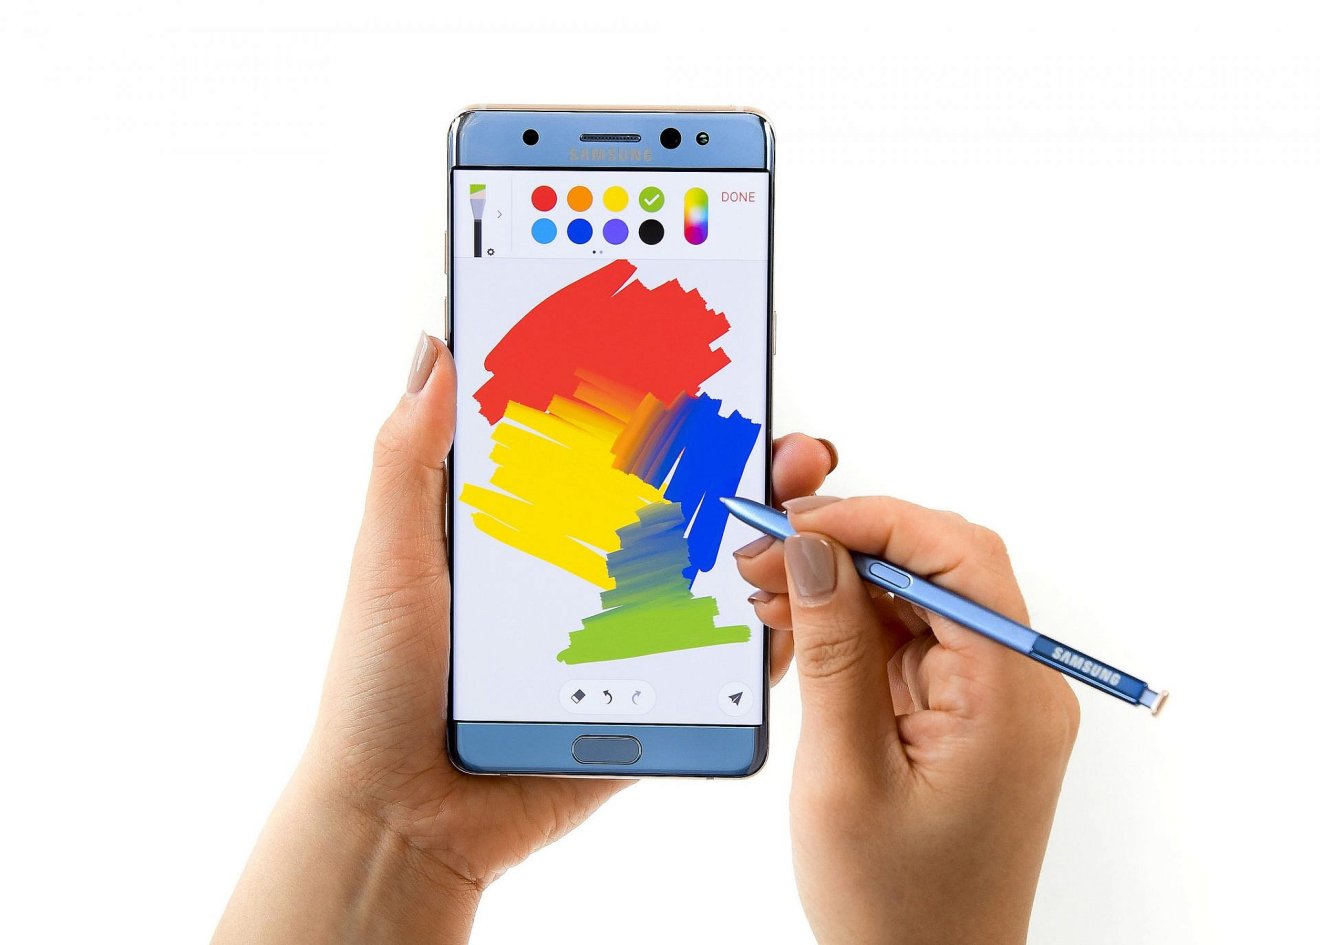 Galaxy Note 7 ประกาศวันขายจริง 9 ก.ย.นี้ แต่เครื่องสีน้ำเงินยังต้องรอ